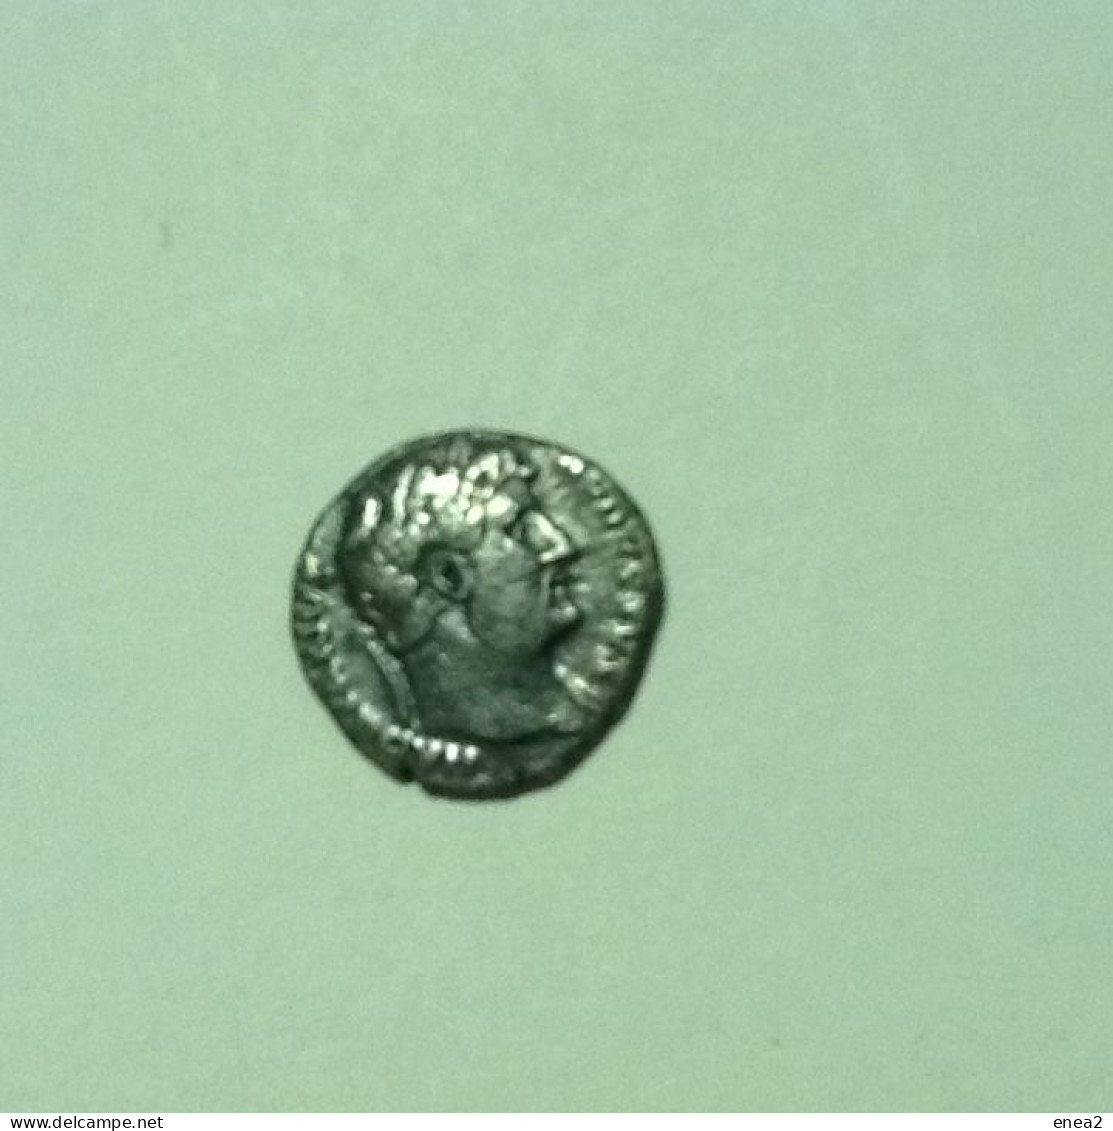 ROMAN EMPIRE - Lotto di 7 monete molto antiche e rare